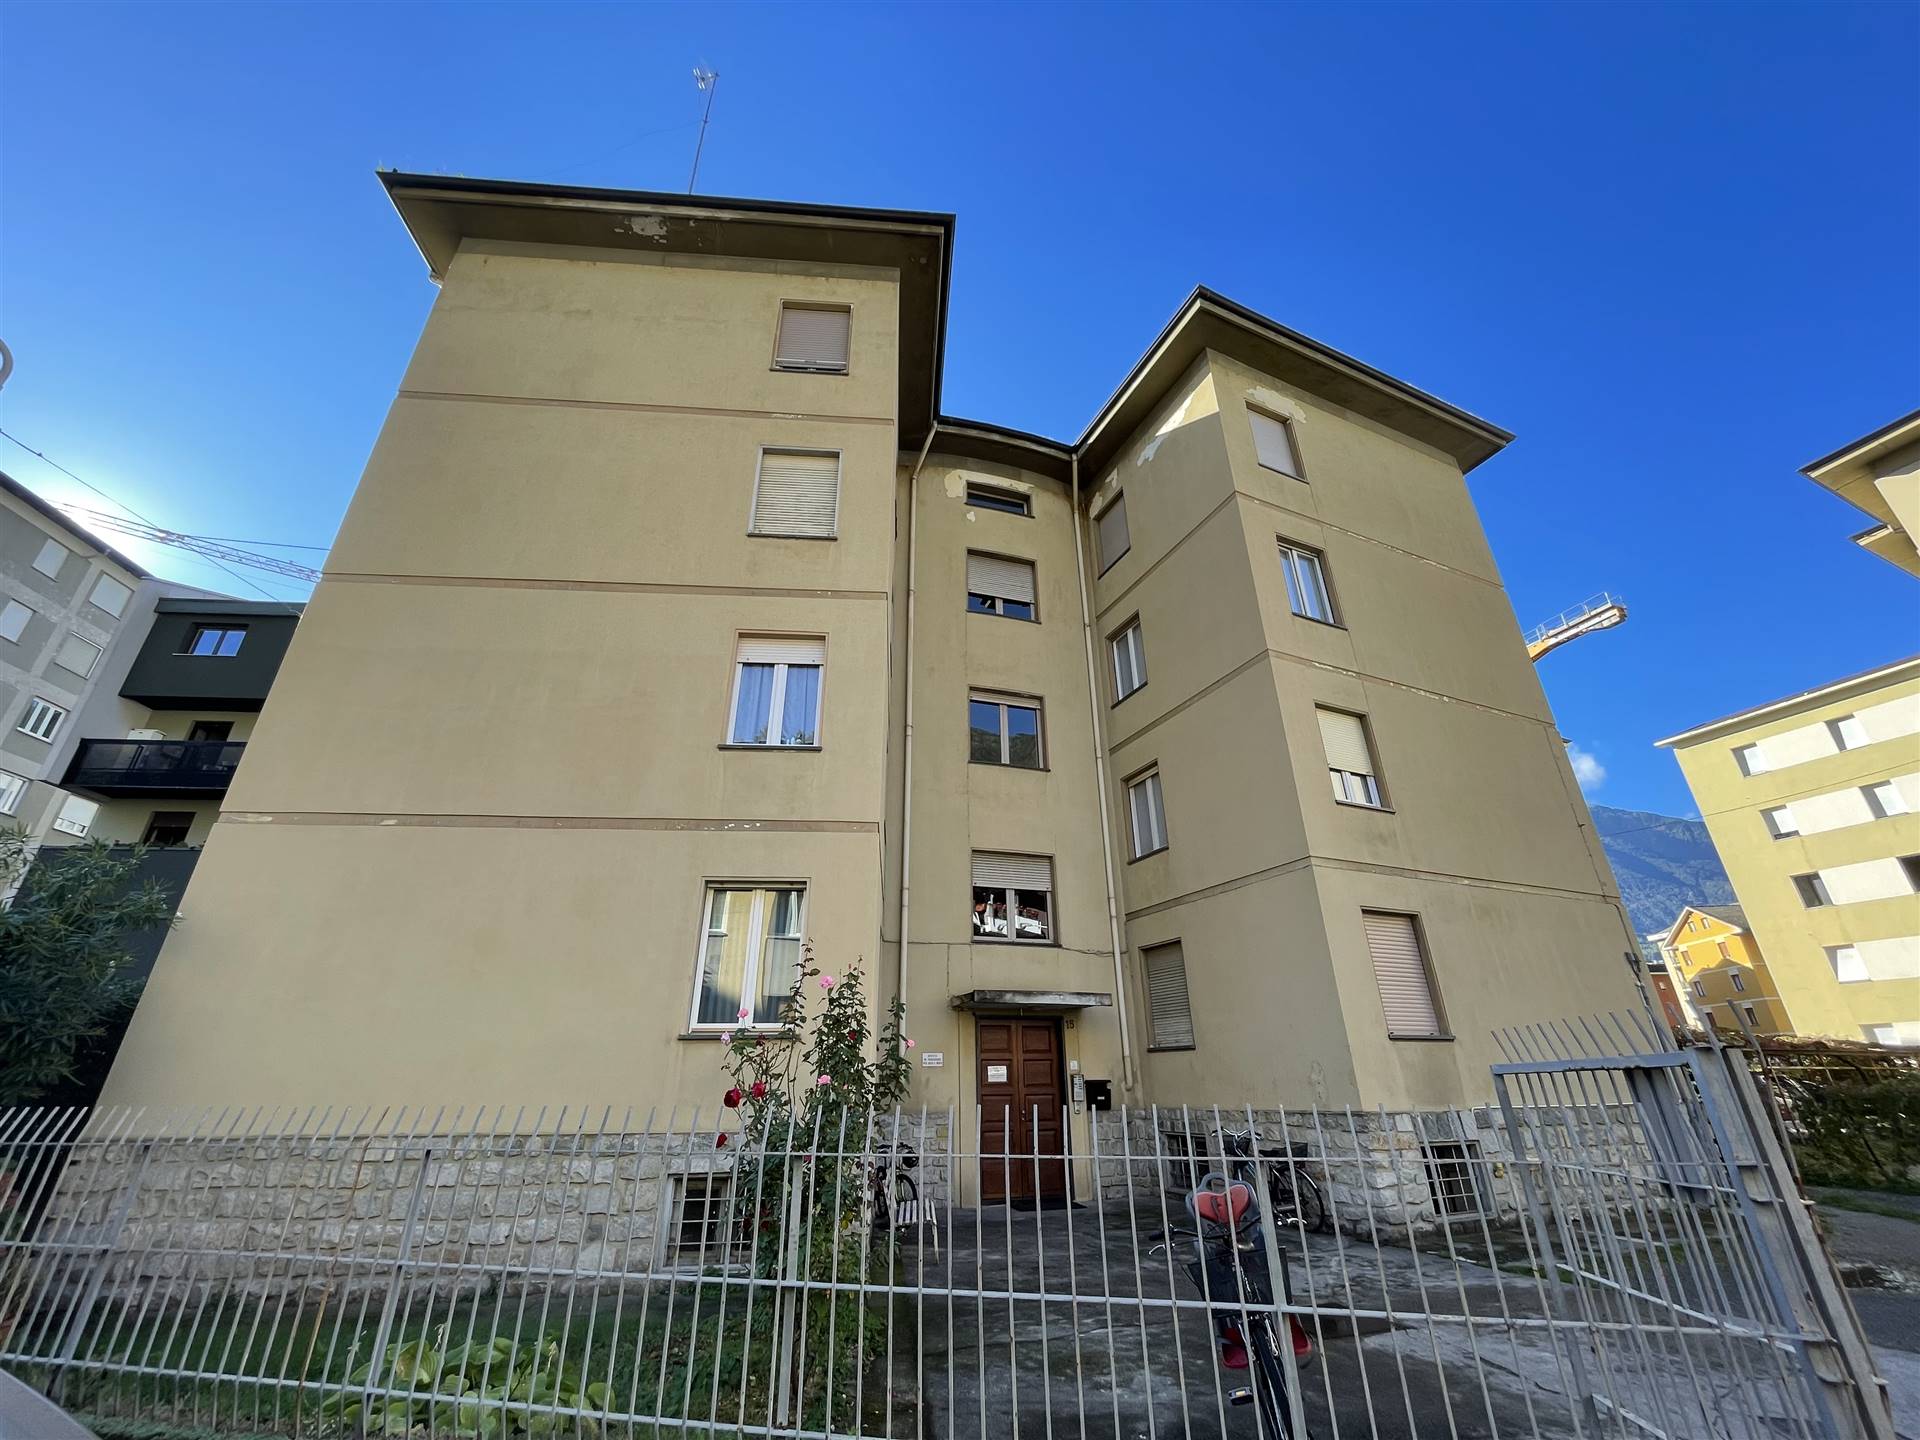 Appartamento in affitto a Sondrio, 4 locali, zona Località: SEMICENTRALE, prezzo € 800 | PortaleAgenzieImmobiliari.it